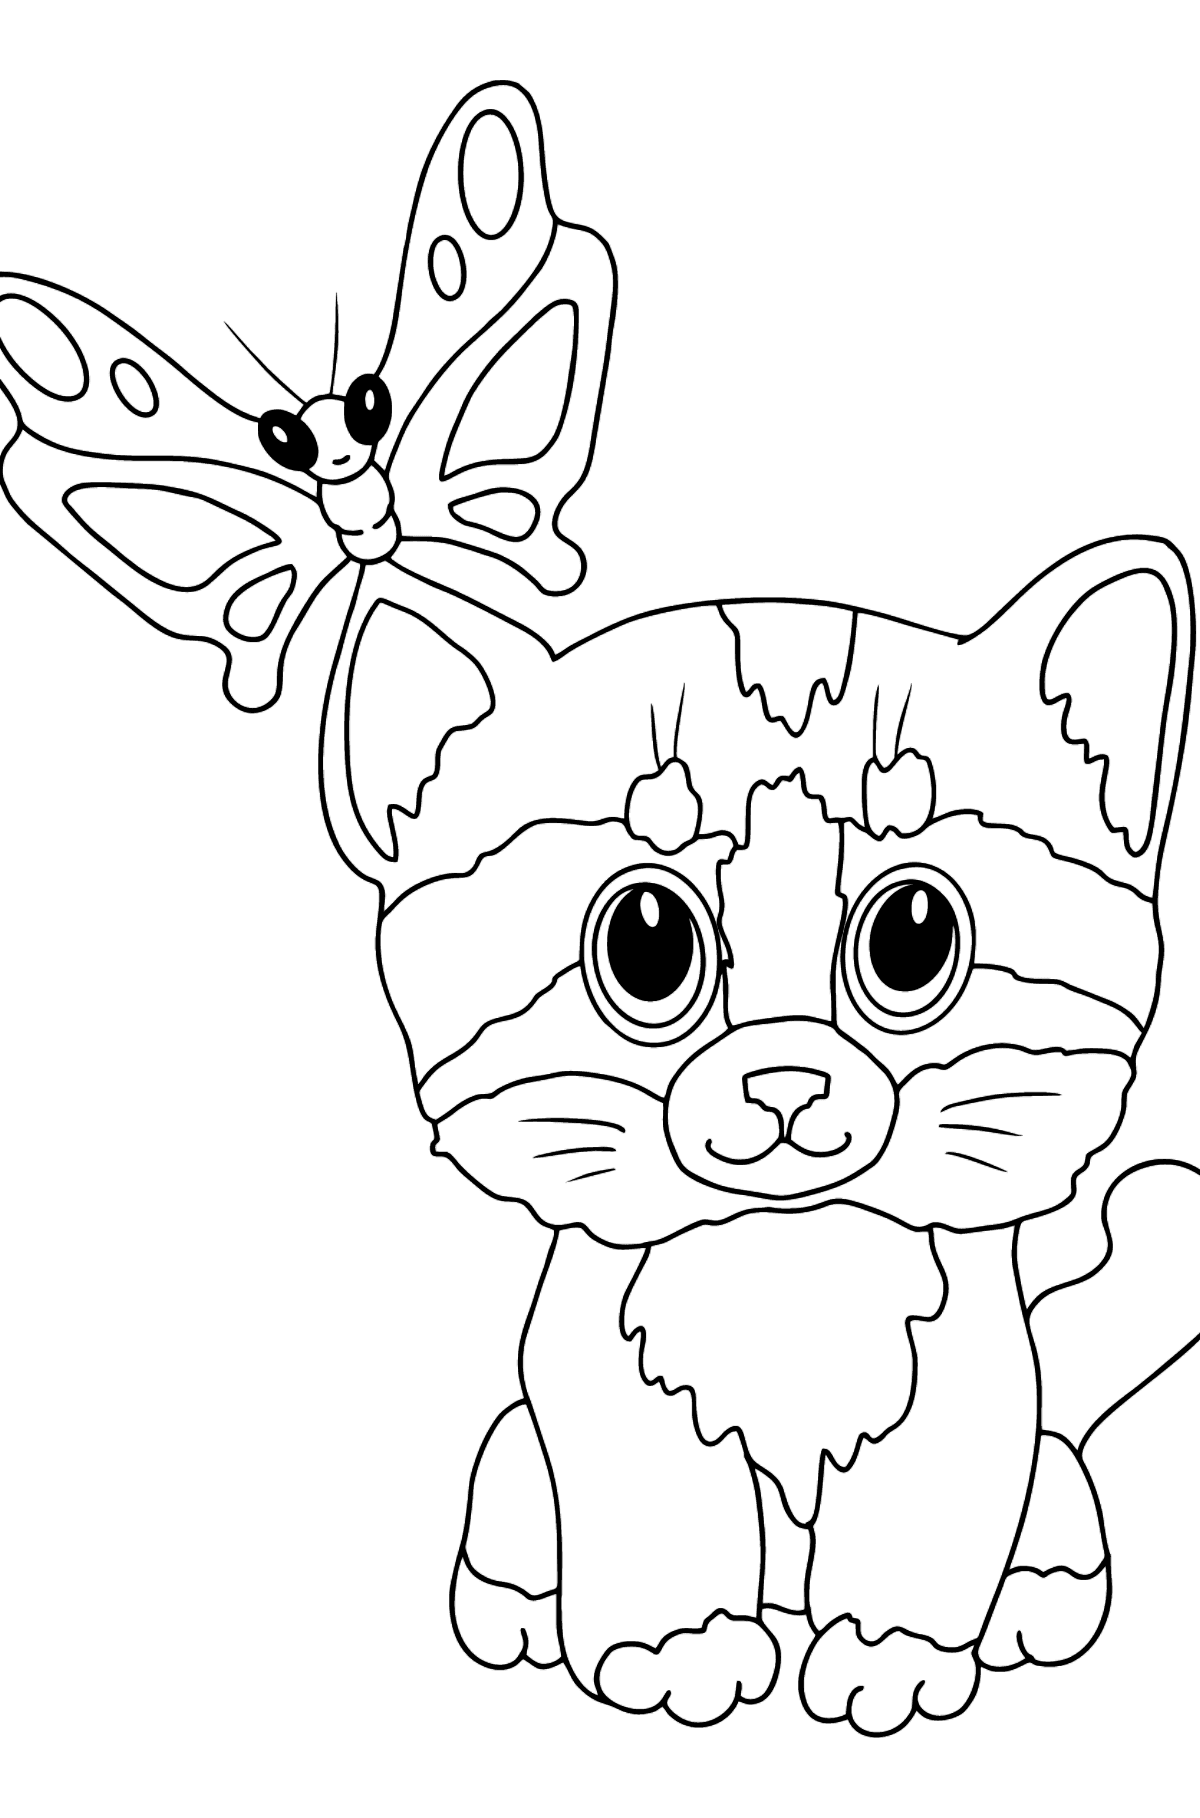 Kleurplaat zacht katje (makkelijk) - kleurplaten voor kinderen